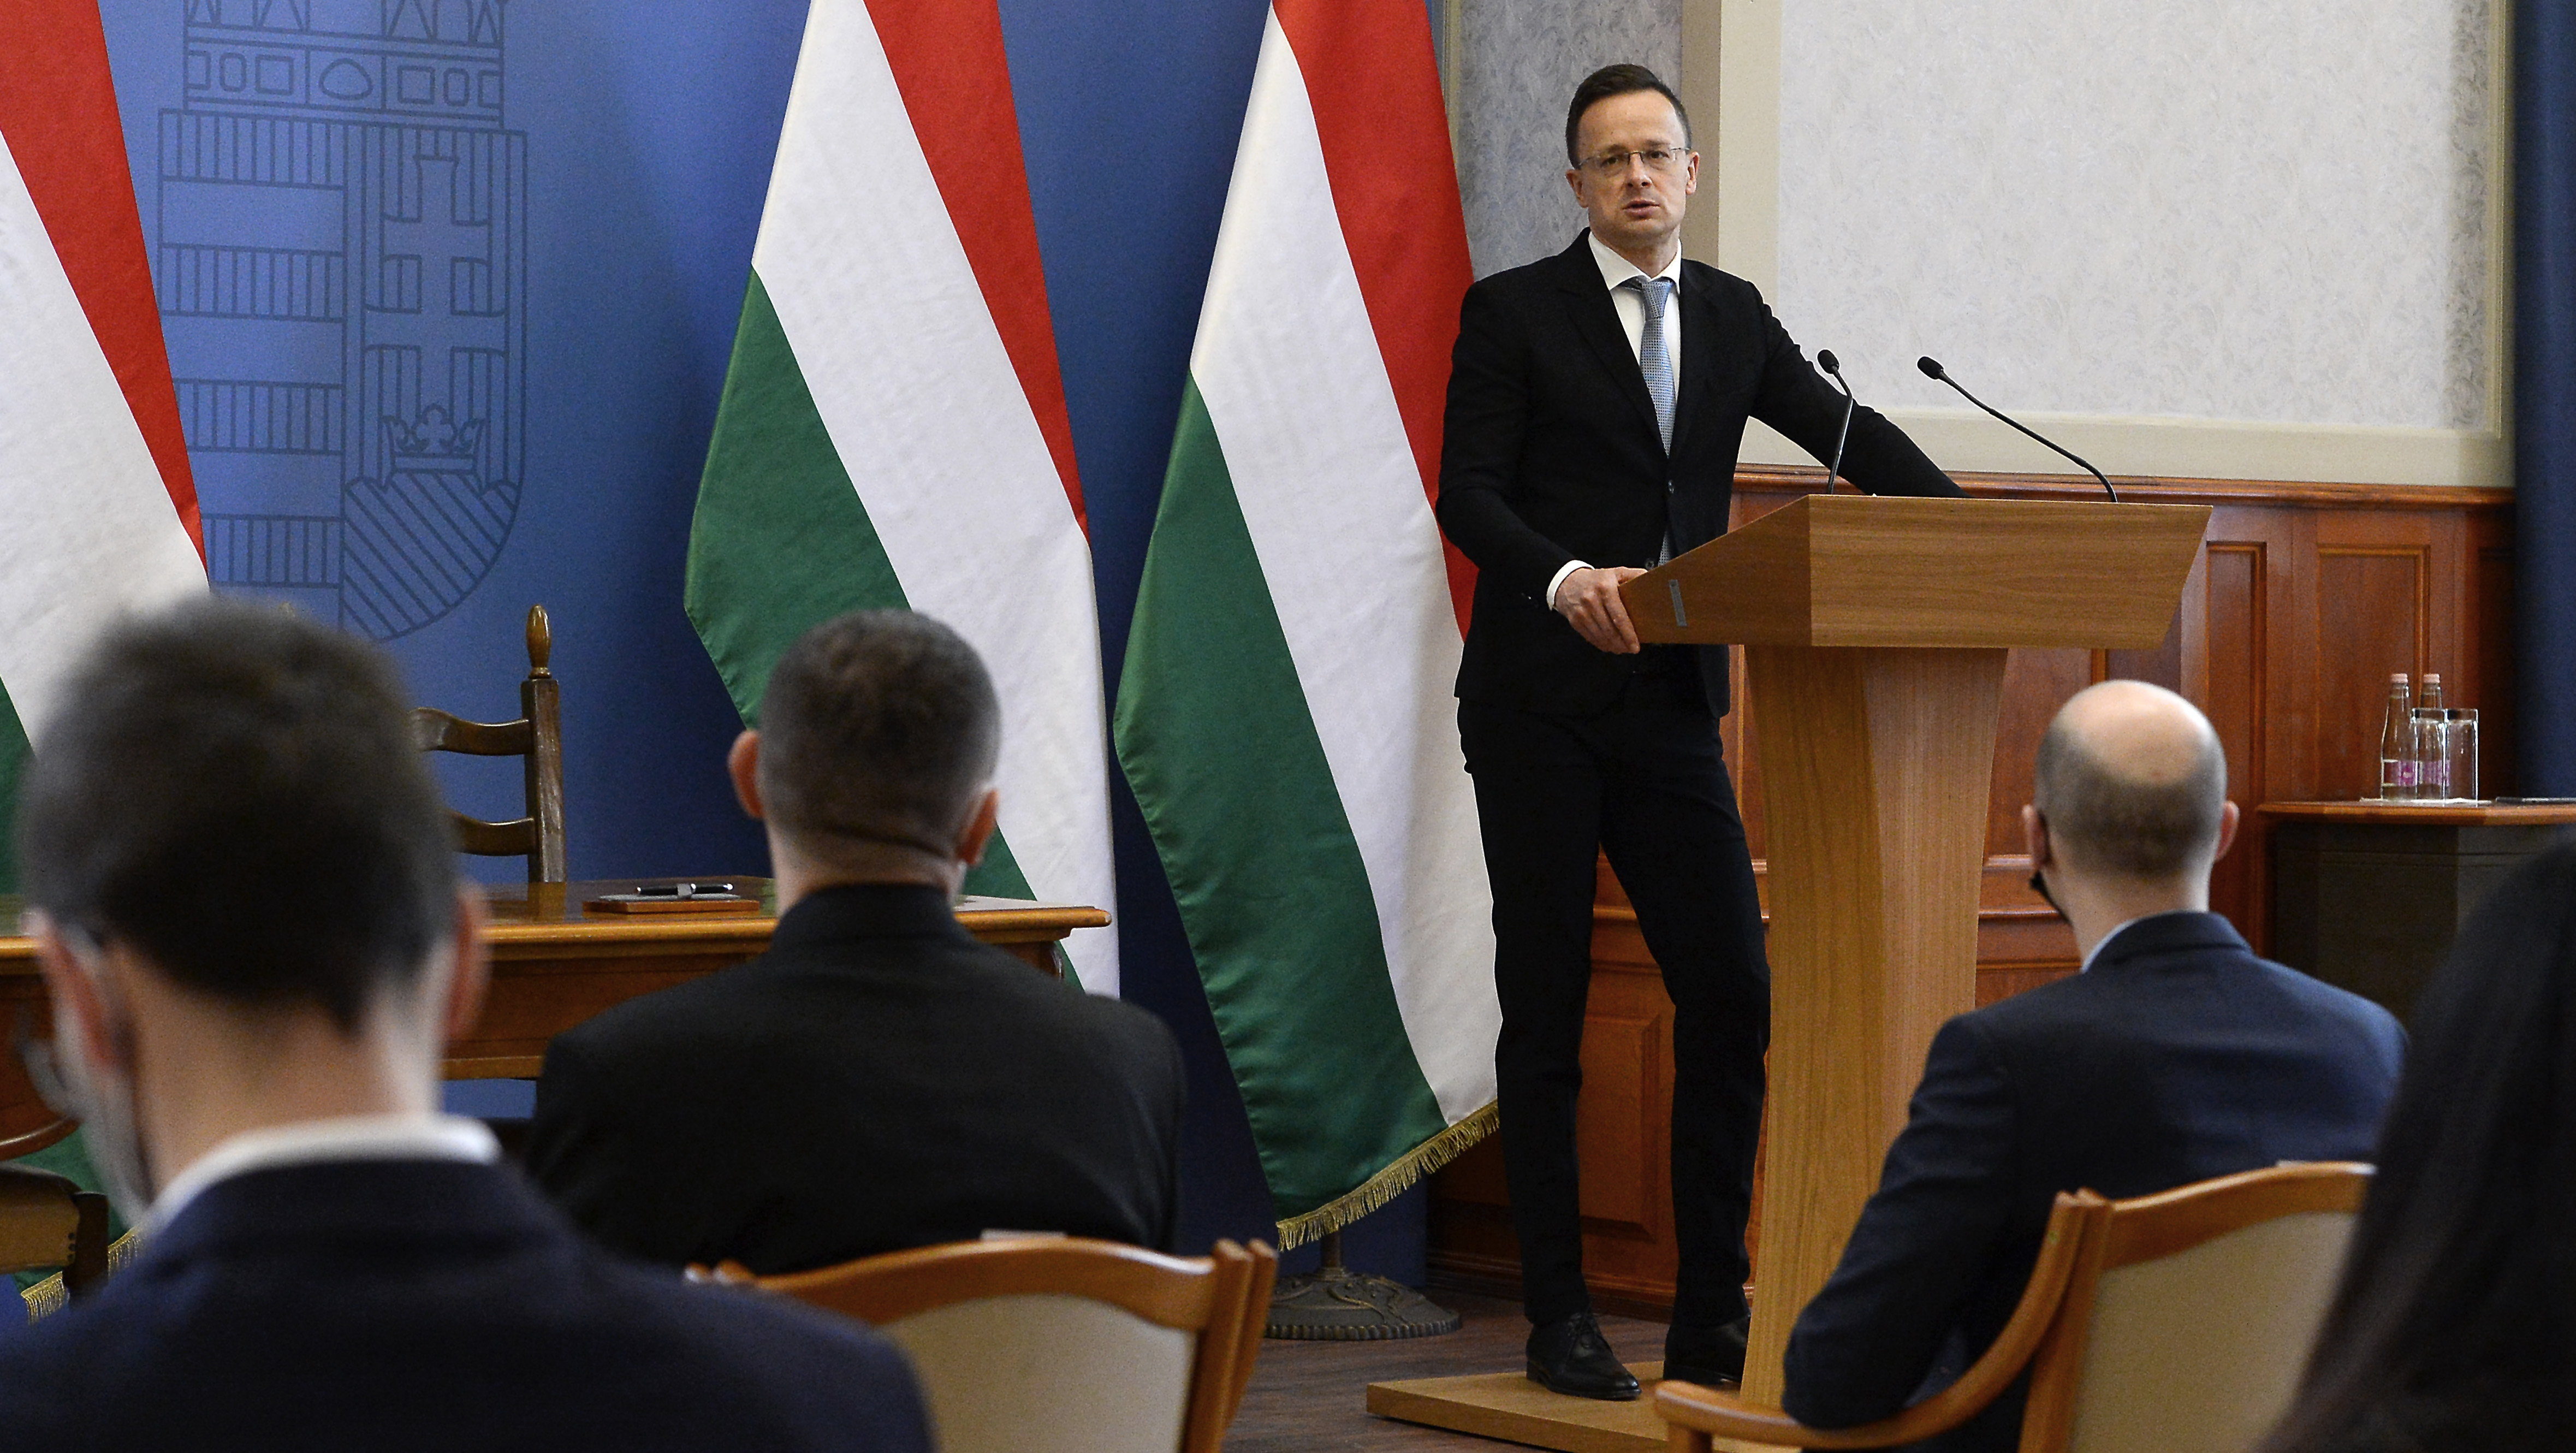 Magyarország a csehek kérése ellenére nem tervezi orosz diplomaták kiutasítását